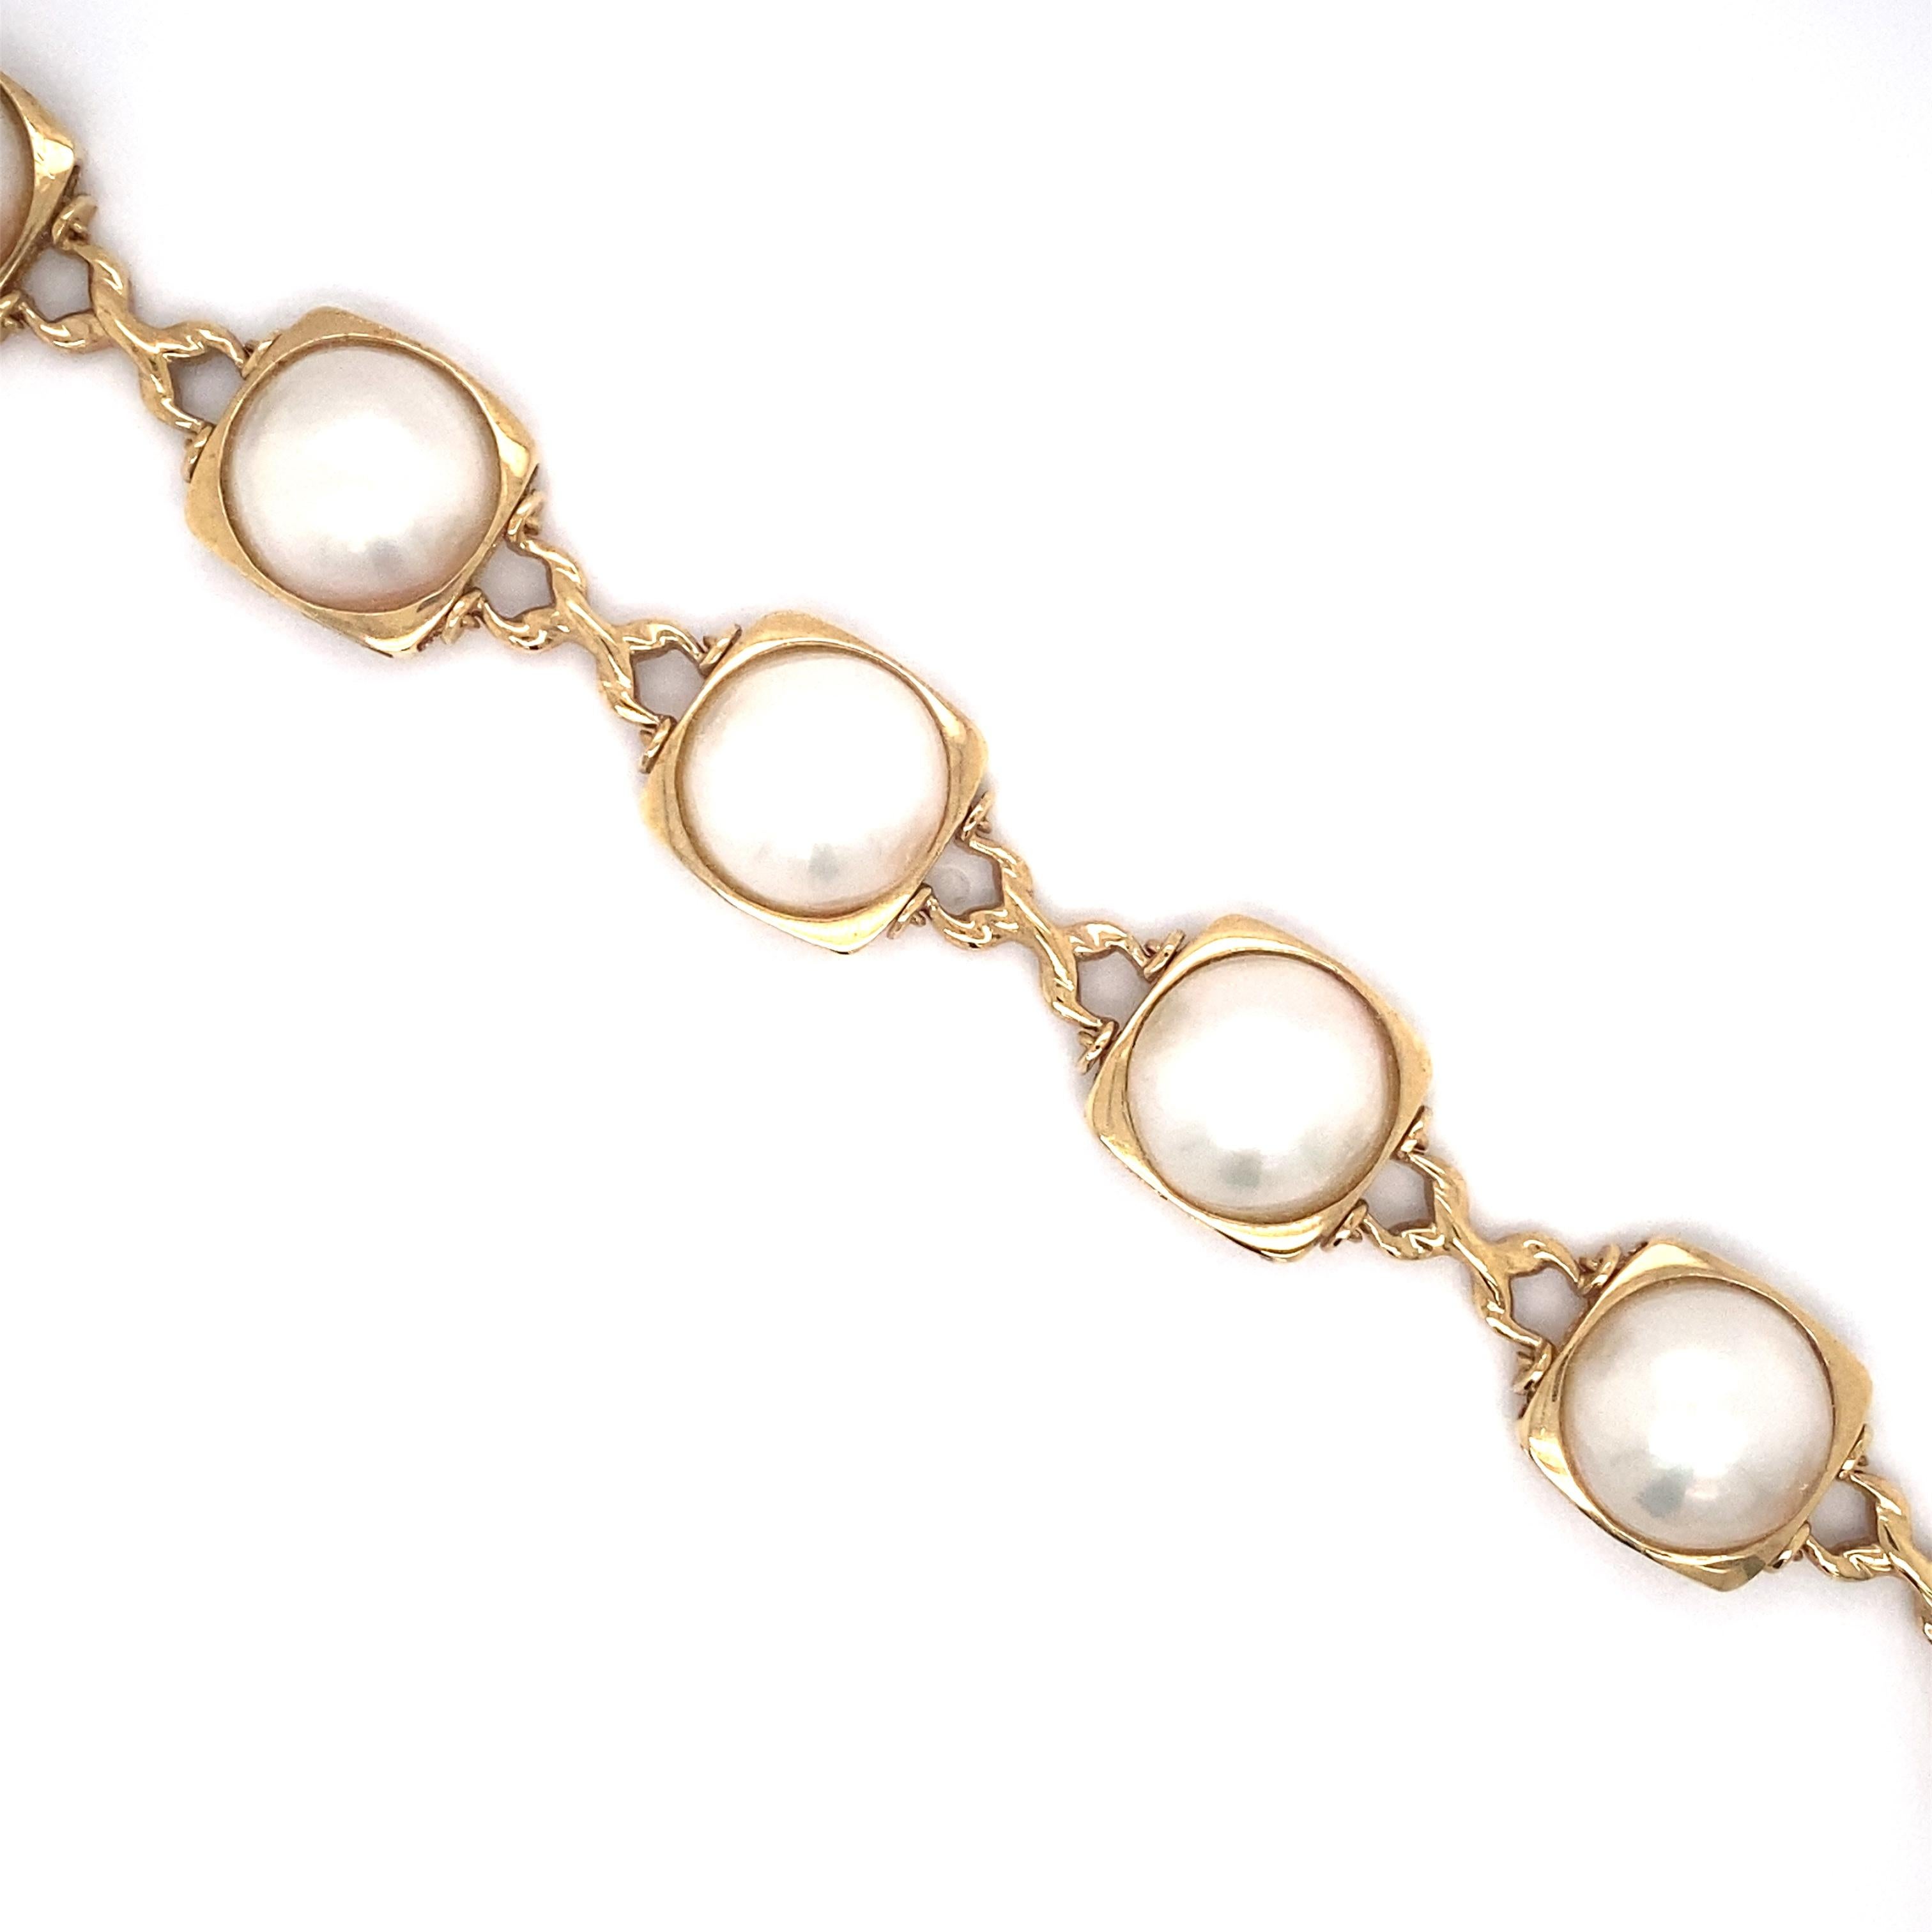 Retro 1980s Mabe Pearl Link Bracelet in 14 Karat Gold